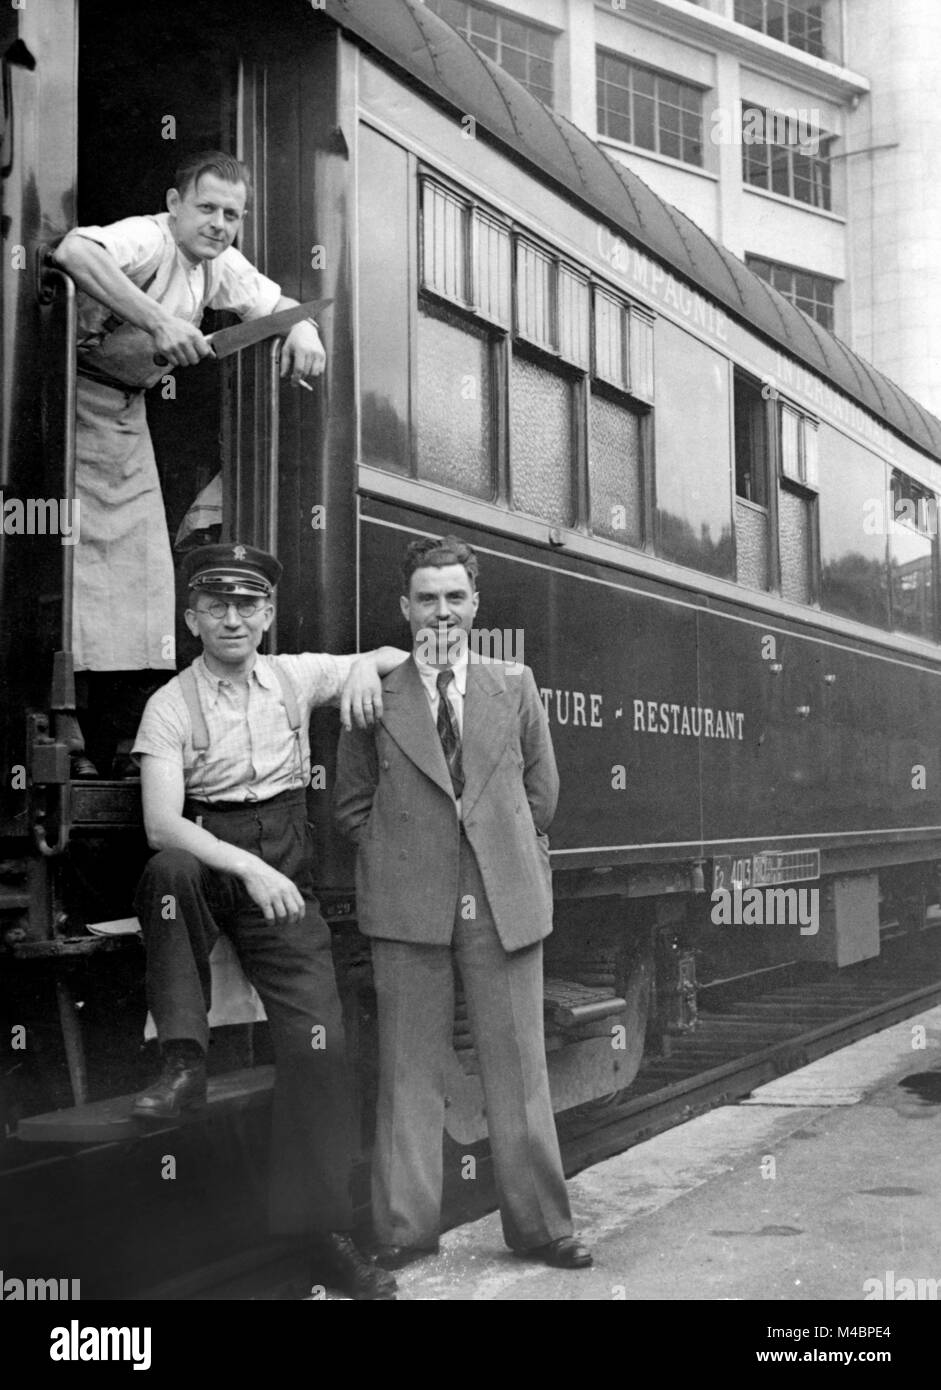 Renseignements personnels pose devant le wagon restaurant cook,conducteur et passager,,1940,emplacement exact inconnu,Allemagne Banque D'Images